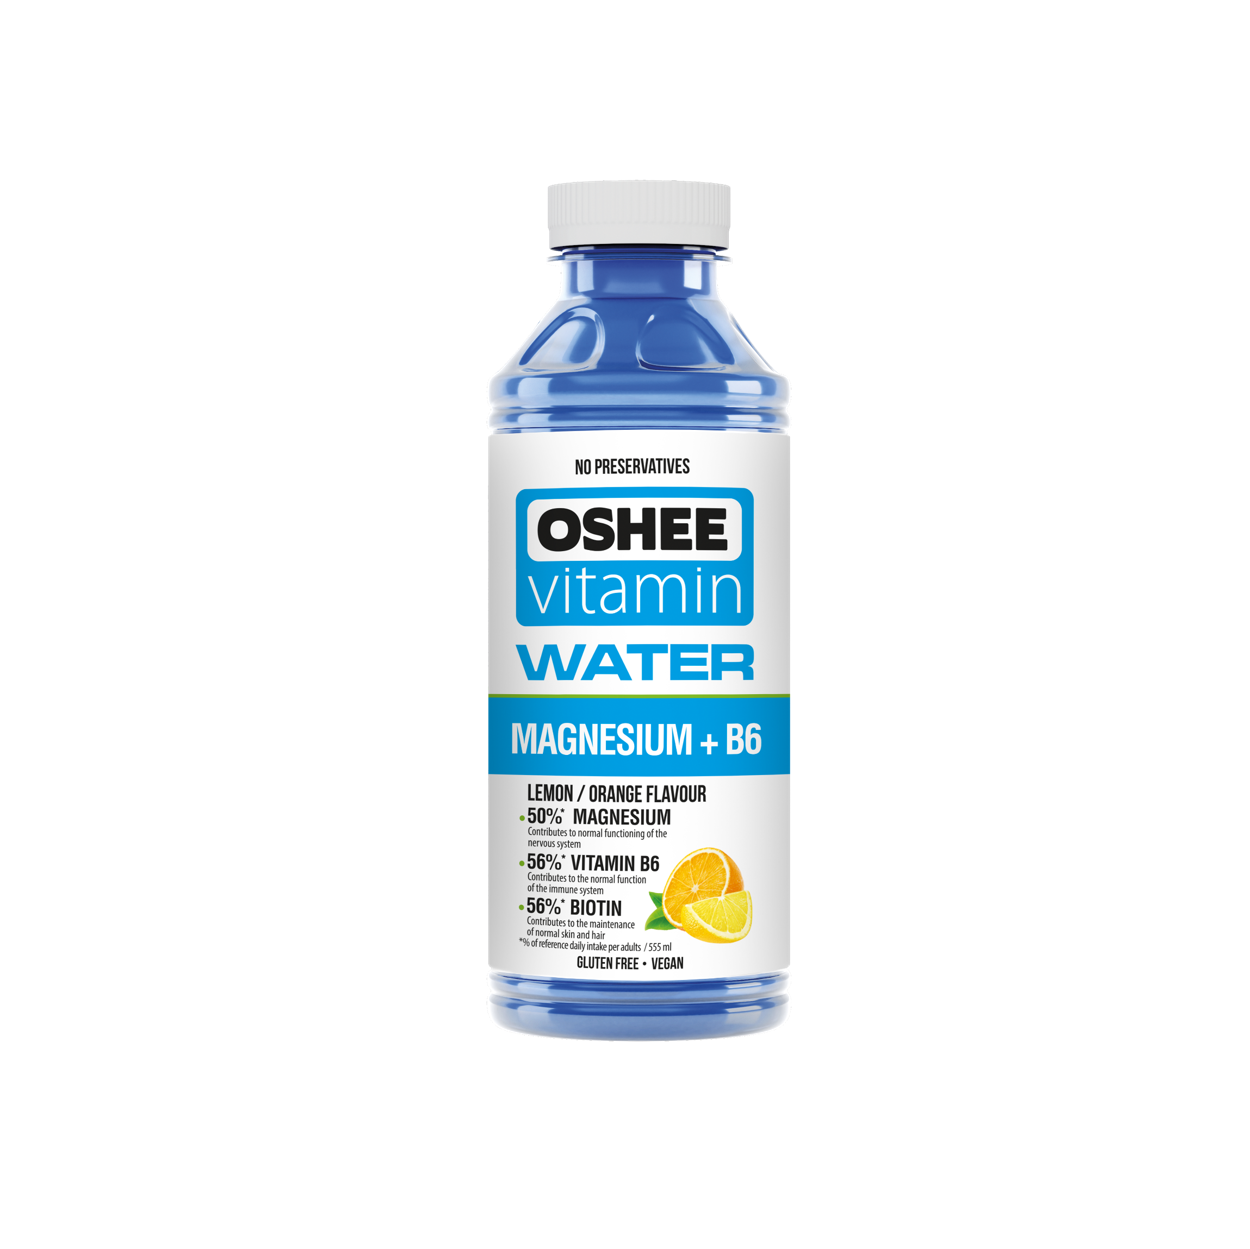 OSHEE vitamin water magnesium + B6